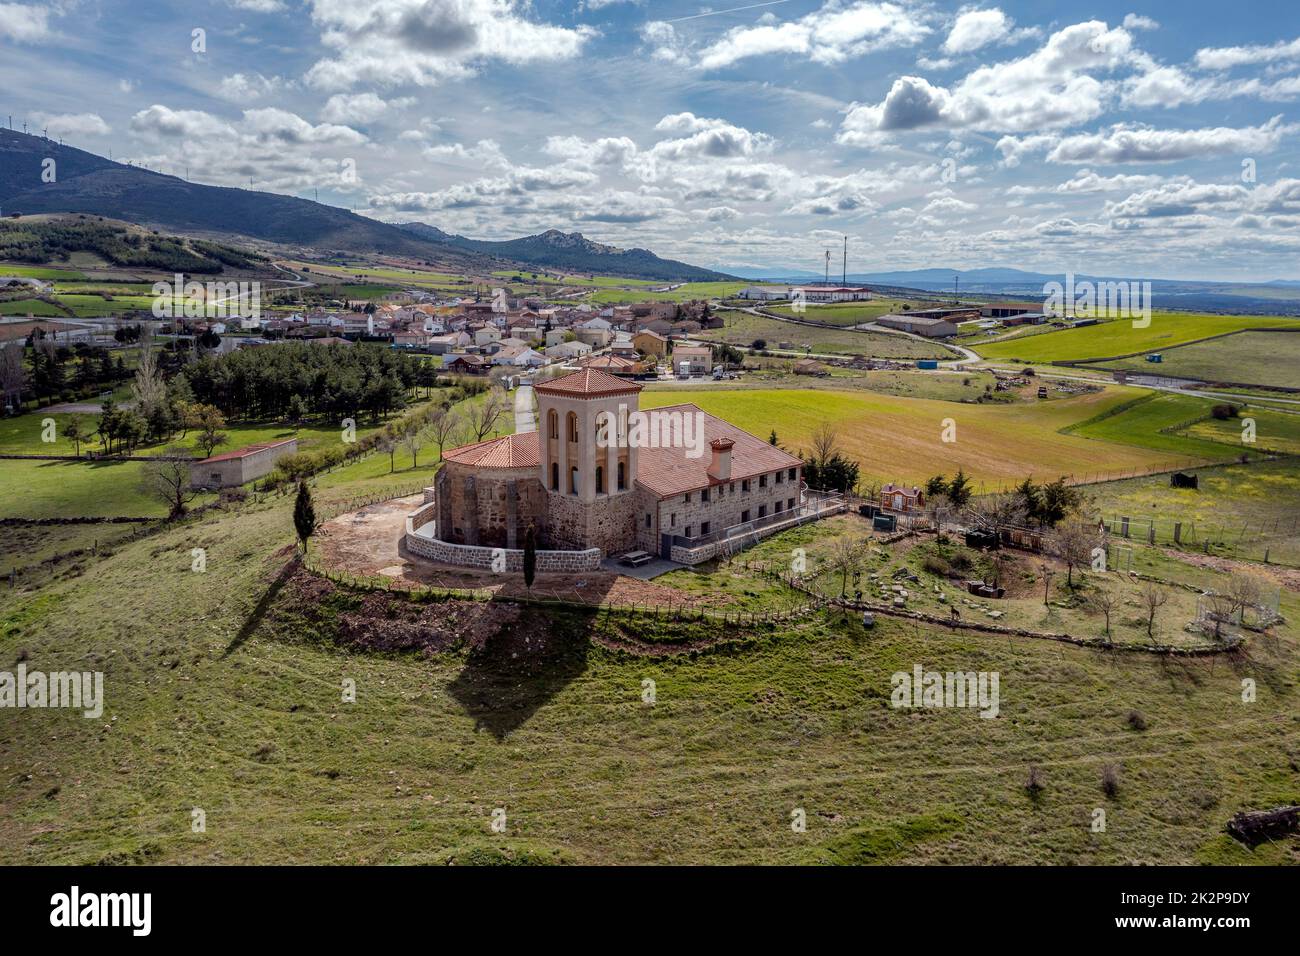 Allgemeiner Blick auf Aldeavieja, eine Stadt in Avila, von der Eremitage aus gesehen Stockfoto